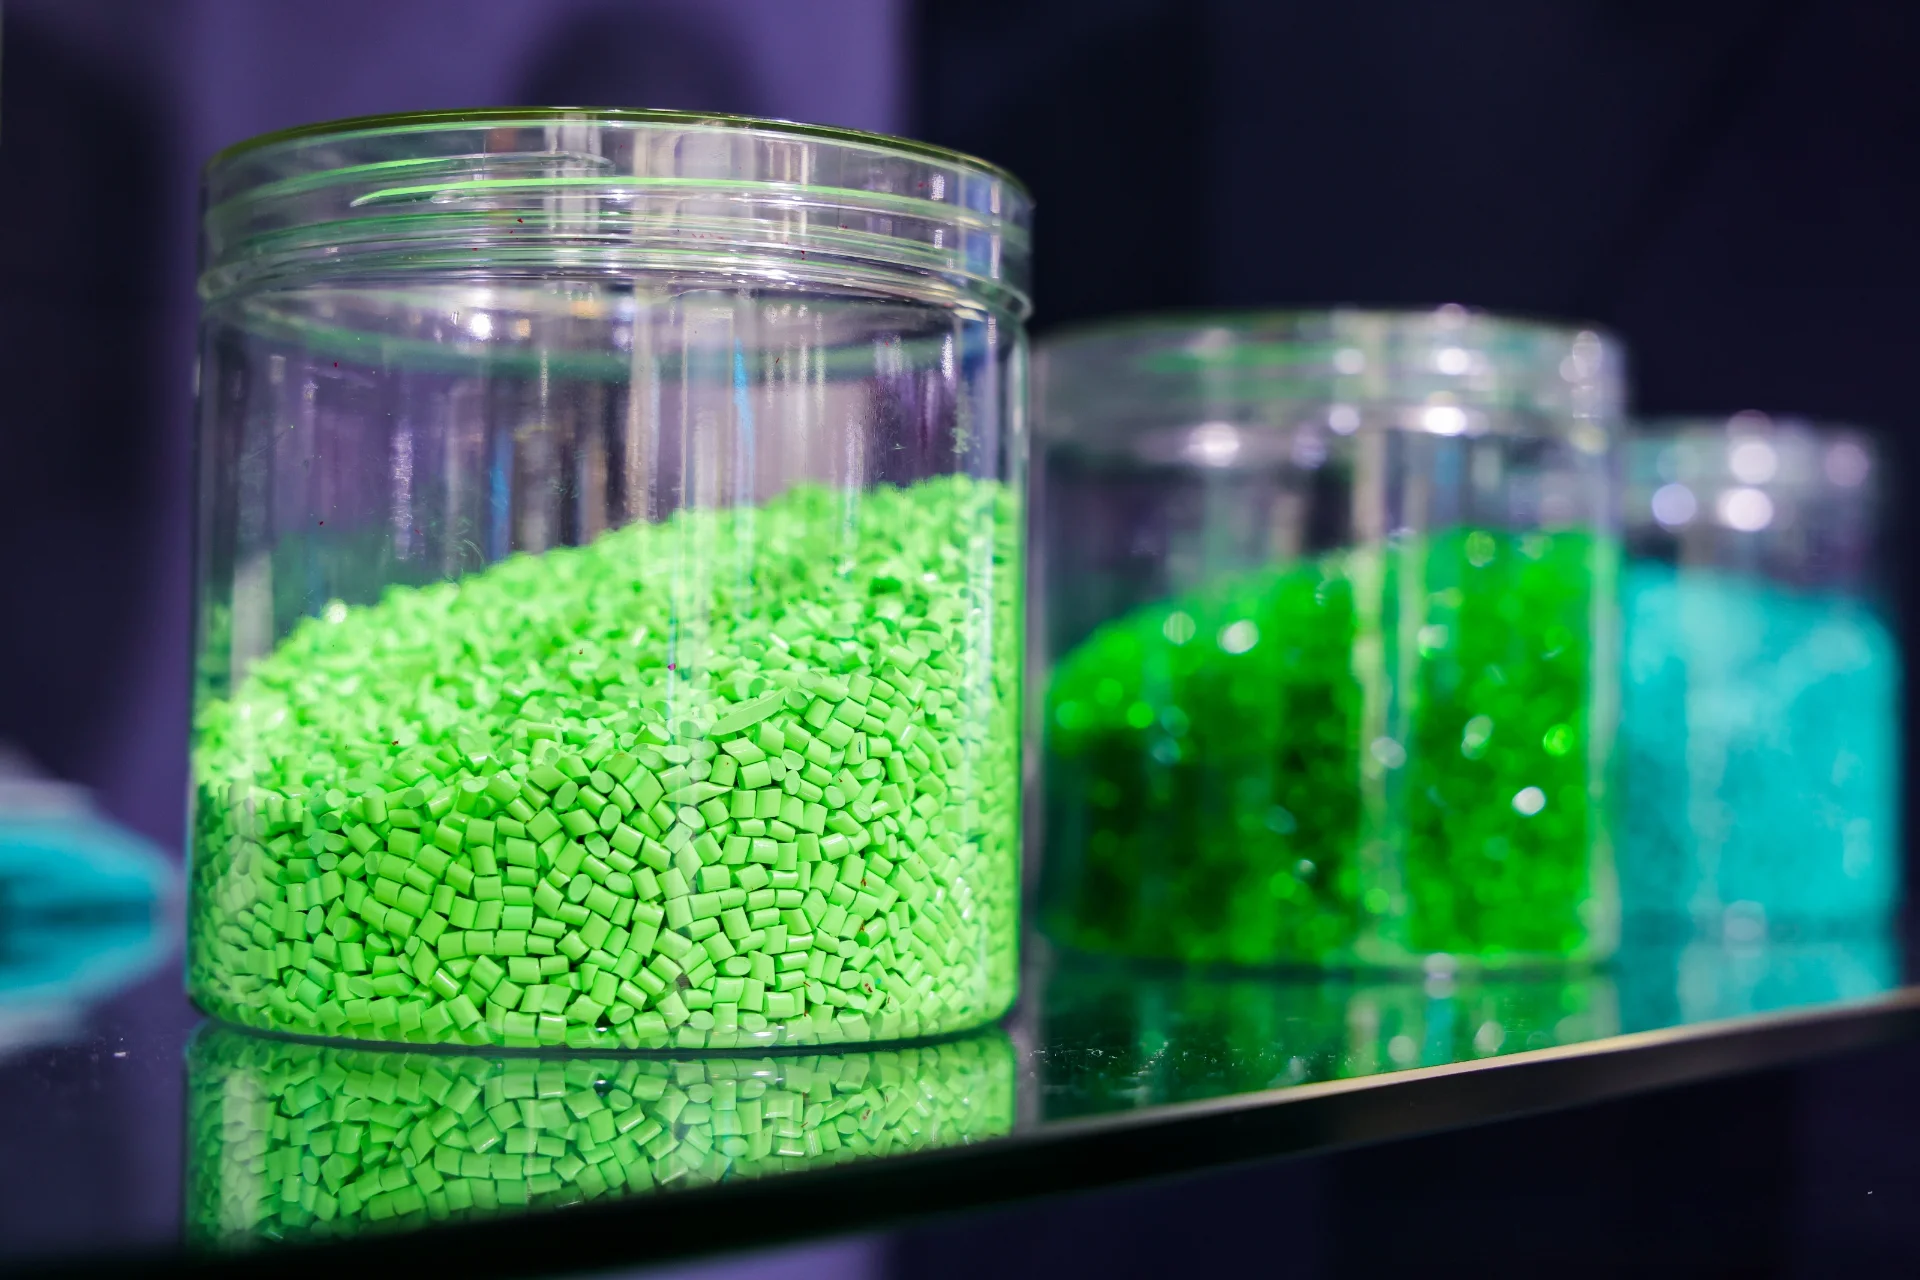 사진은 색깔 있는 플라스틱 알갱이가 담긴 세 개의 유리병을 클로즈업한 모습입니다. 전경에 있는 병에는 밝은 녹색 알갱이가 들어 있고, 배경에 있는 병에는 다양한 색조의 녹색과 파란색 알갱이가 들어 있습니다. 이러한 과립은 일반적으로 사출 성형 및 압출과 같은 공정을 통해 다양한 플라스틱 제품을 제조하기 위한 플라스틱 산업의 원료로 사용됩니다.